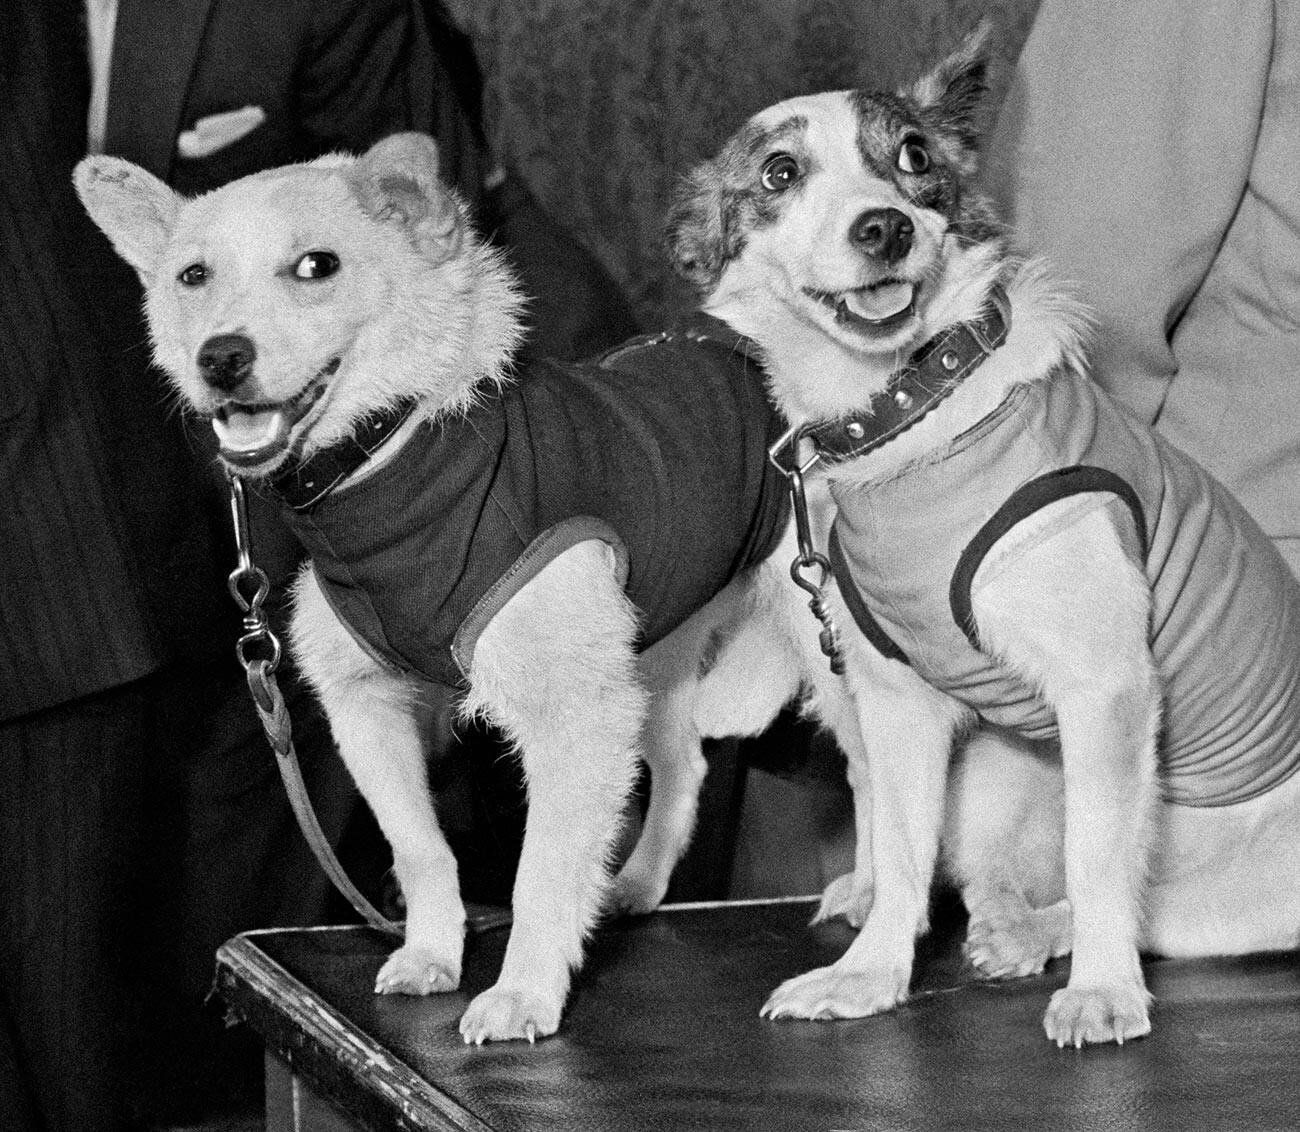 Los perros espaciales soviéticos Belka y Strelka